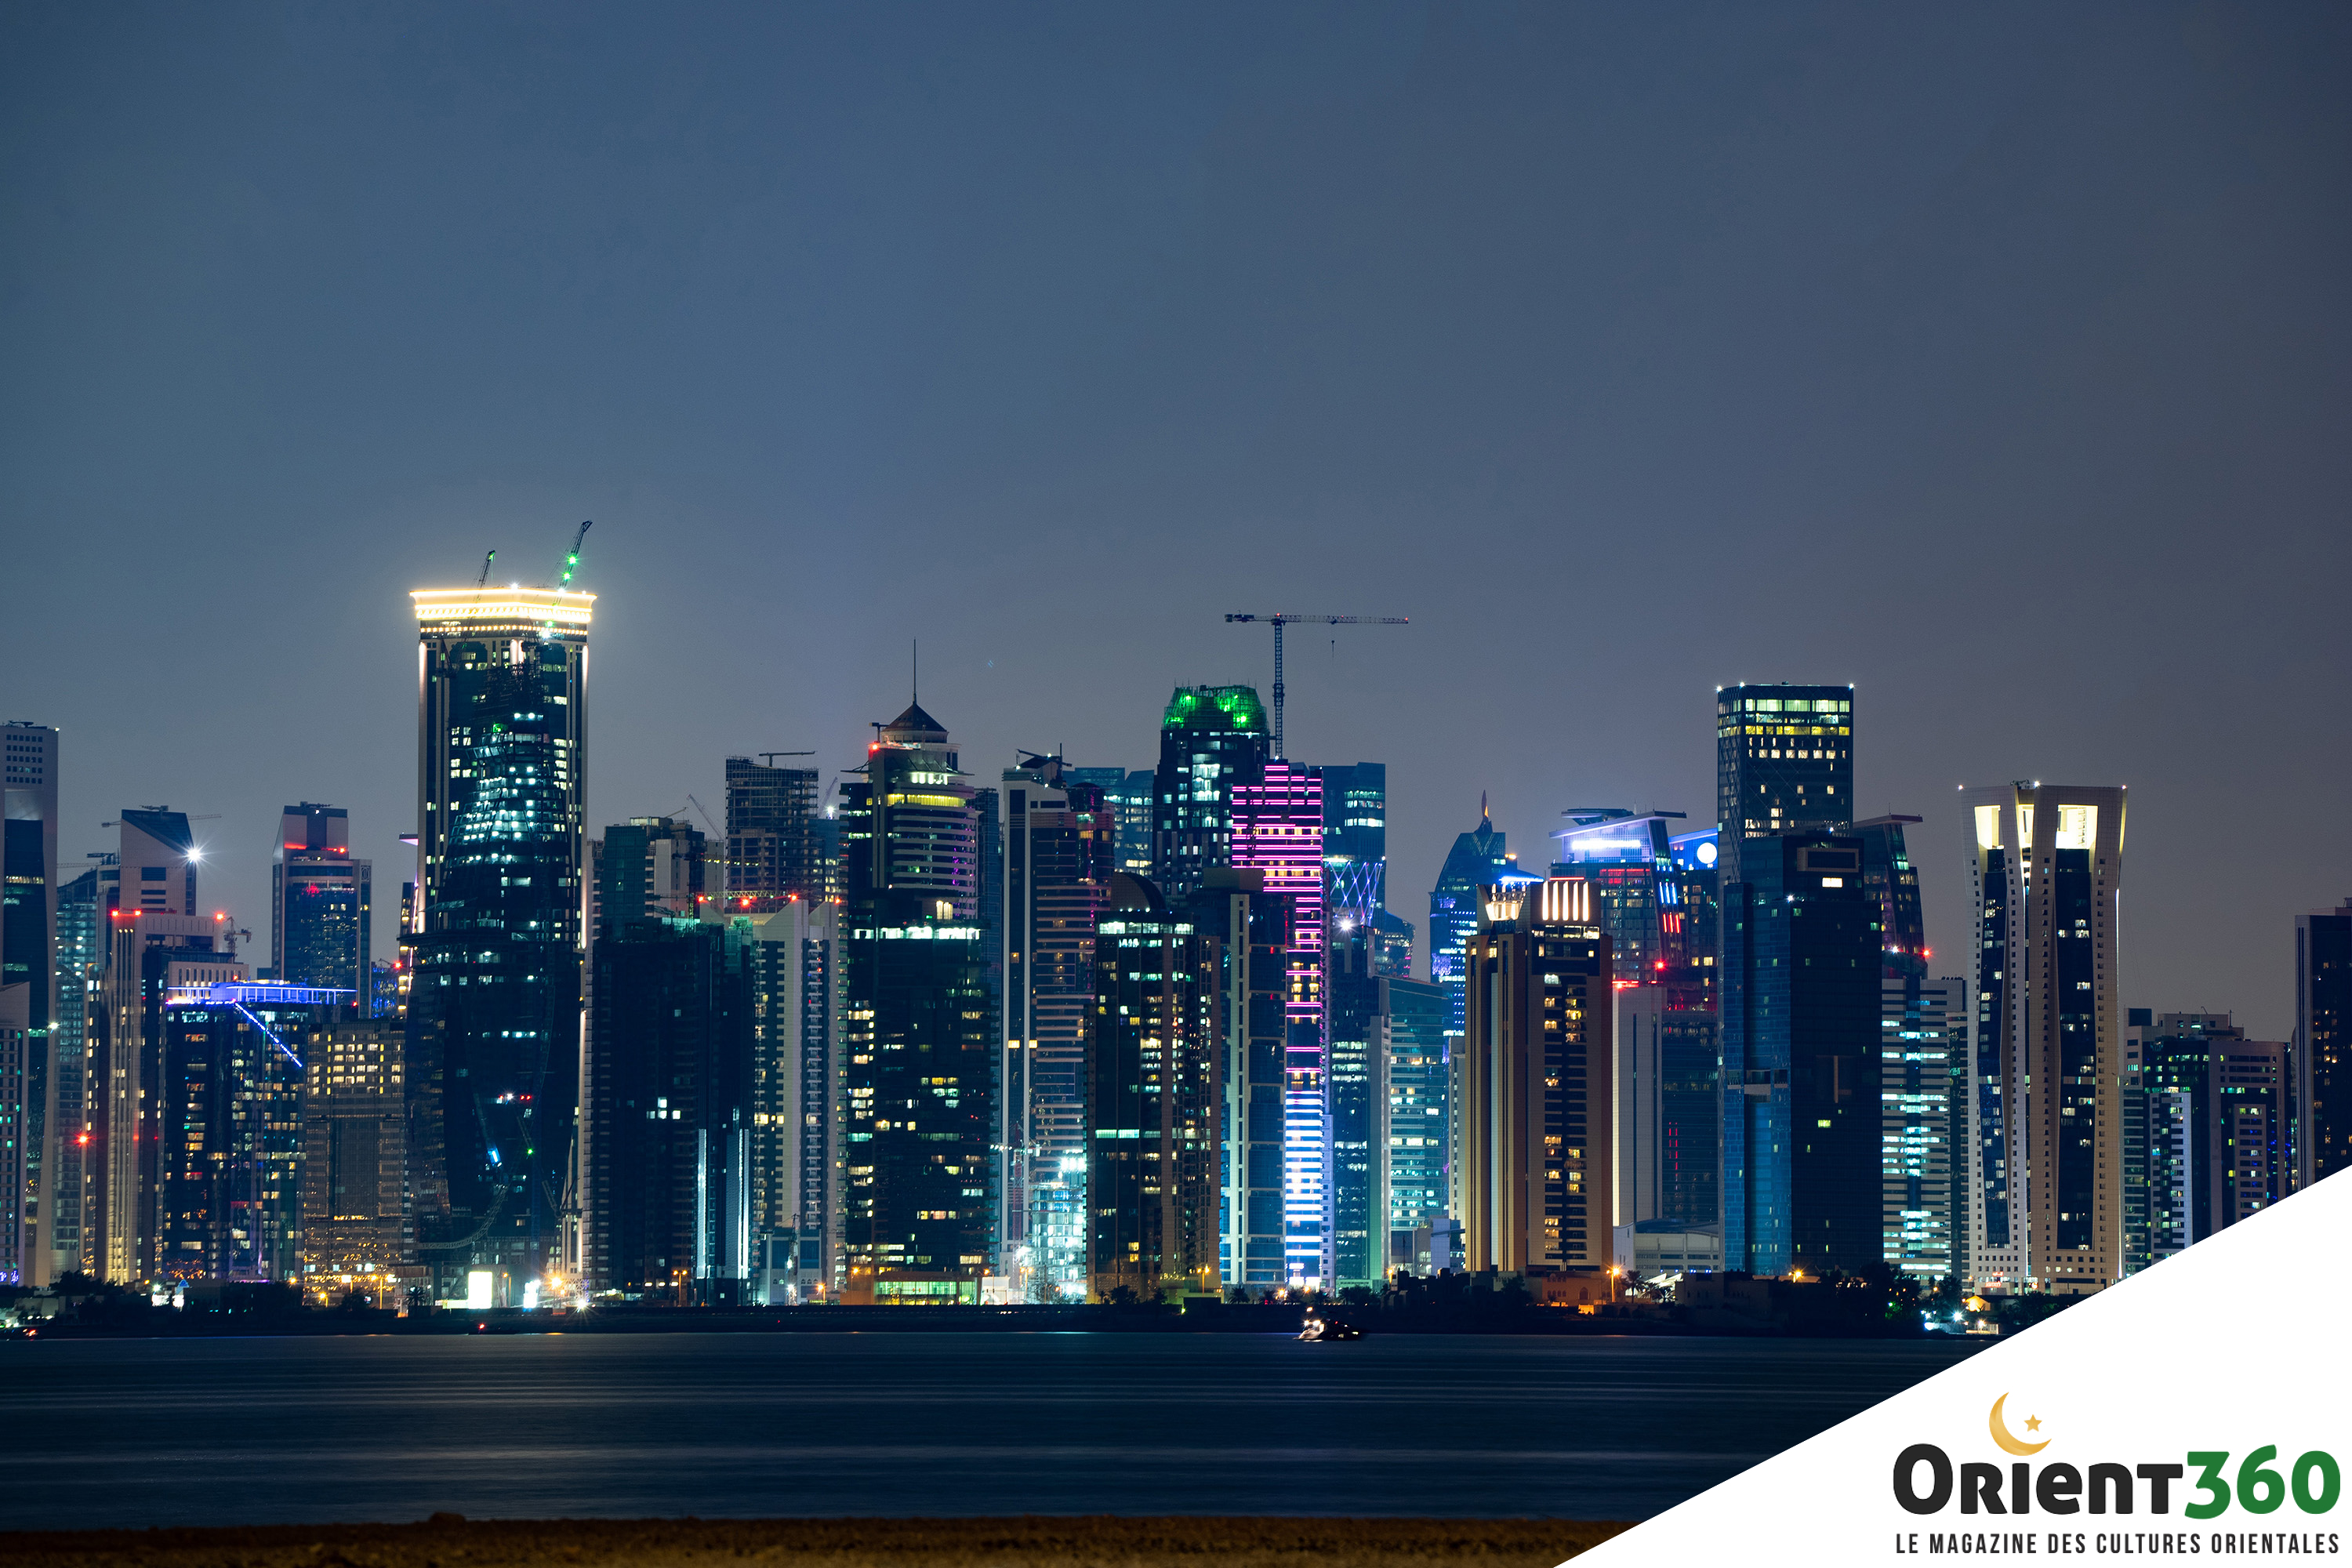 Photo prise de nuit des gratte-ciel de Doha au Qatar